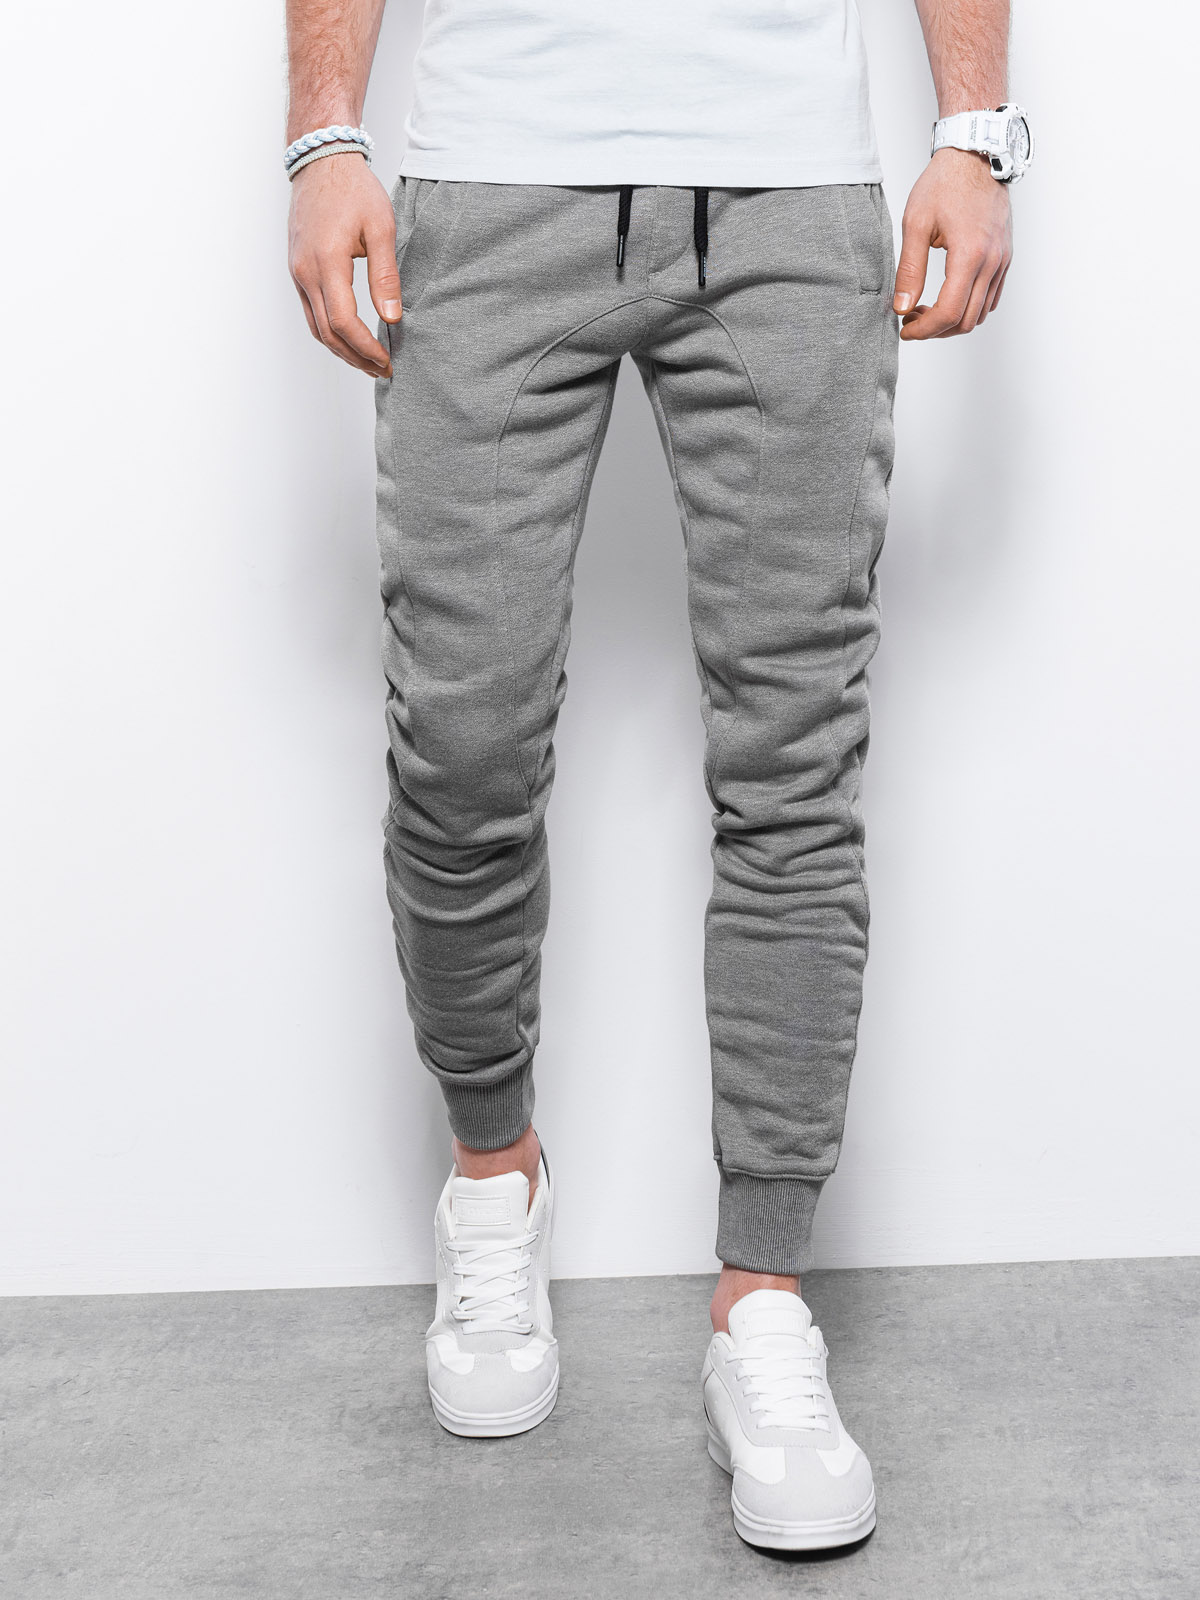 Men's sweatpants P867 - grey | MODONE wholesale - Clothing For Men